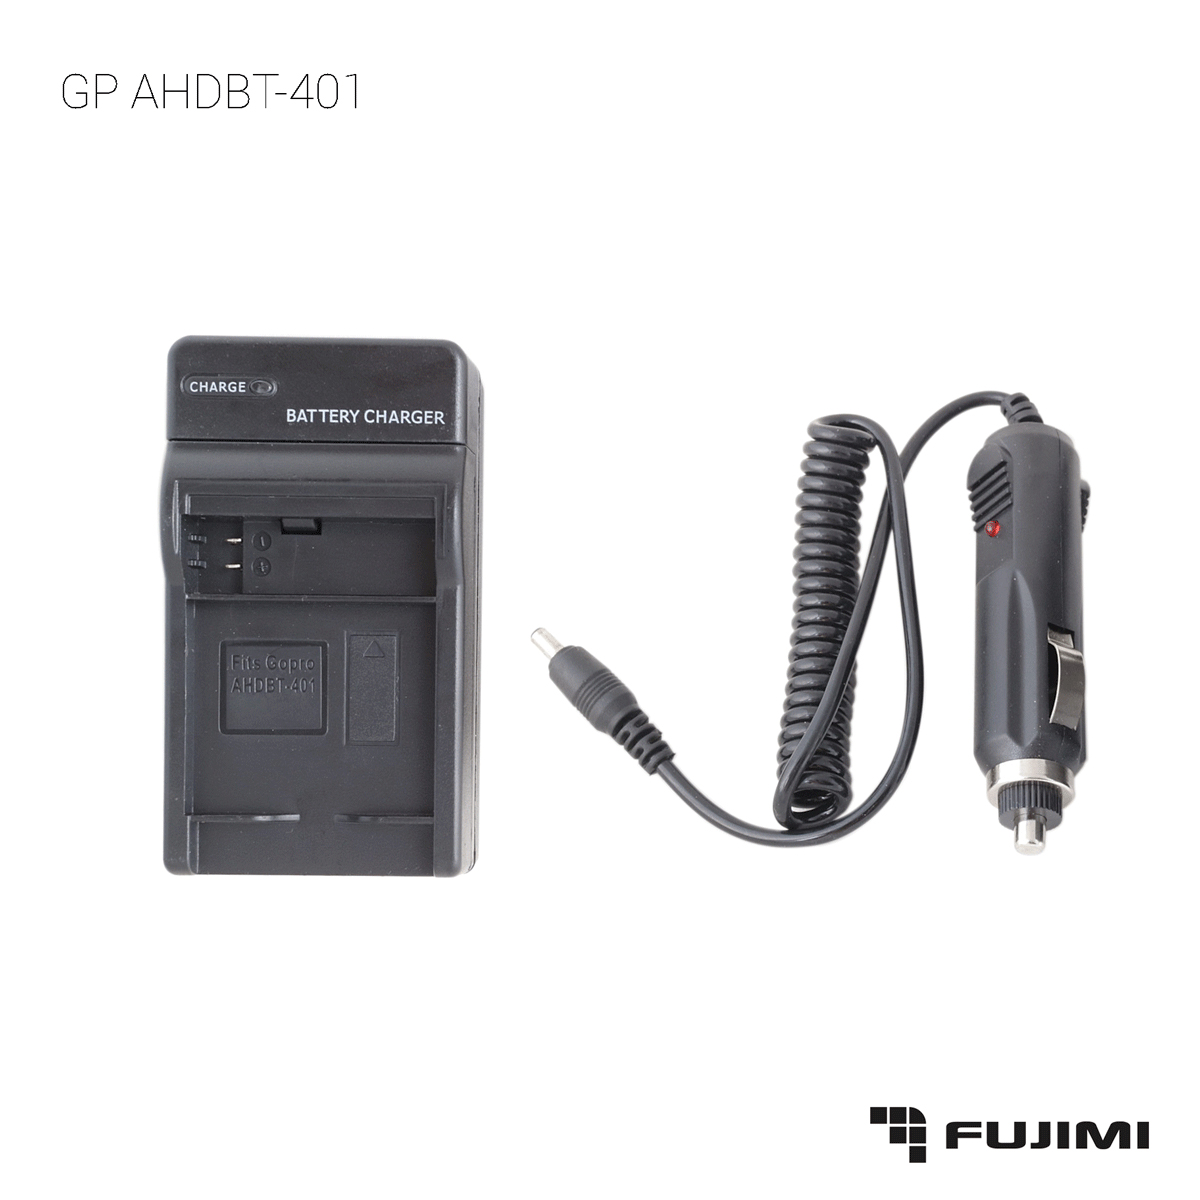  Fujimi  GP AHDBT-401 Зарядное устройство с автомобильным адаптером (GoPro4)